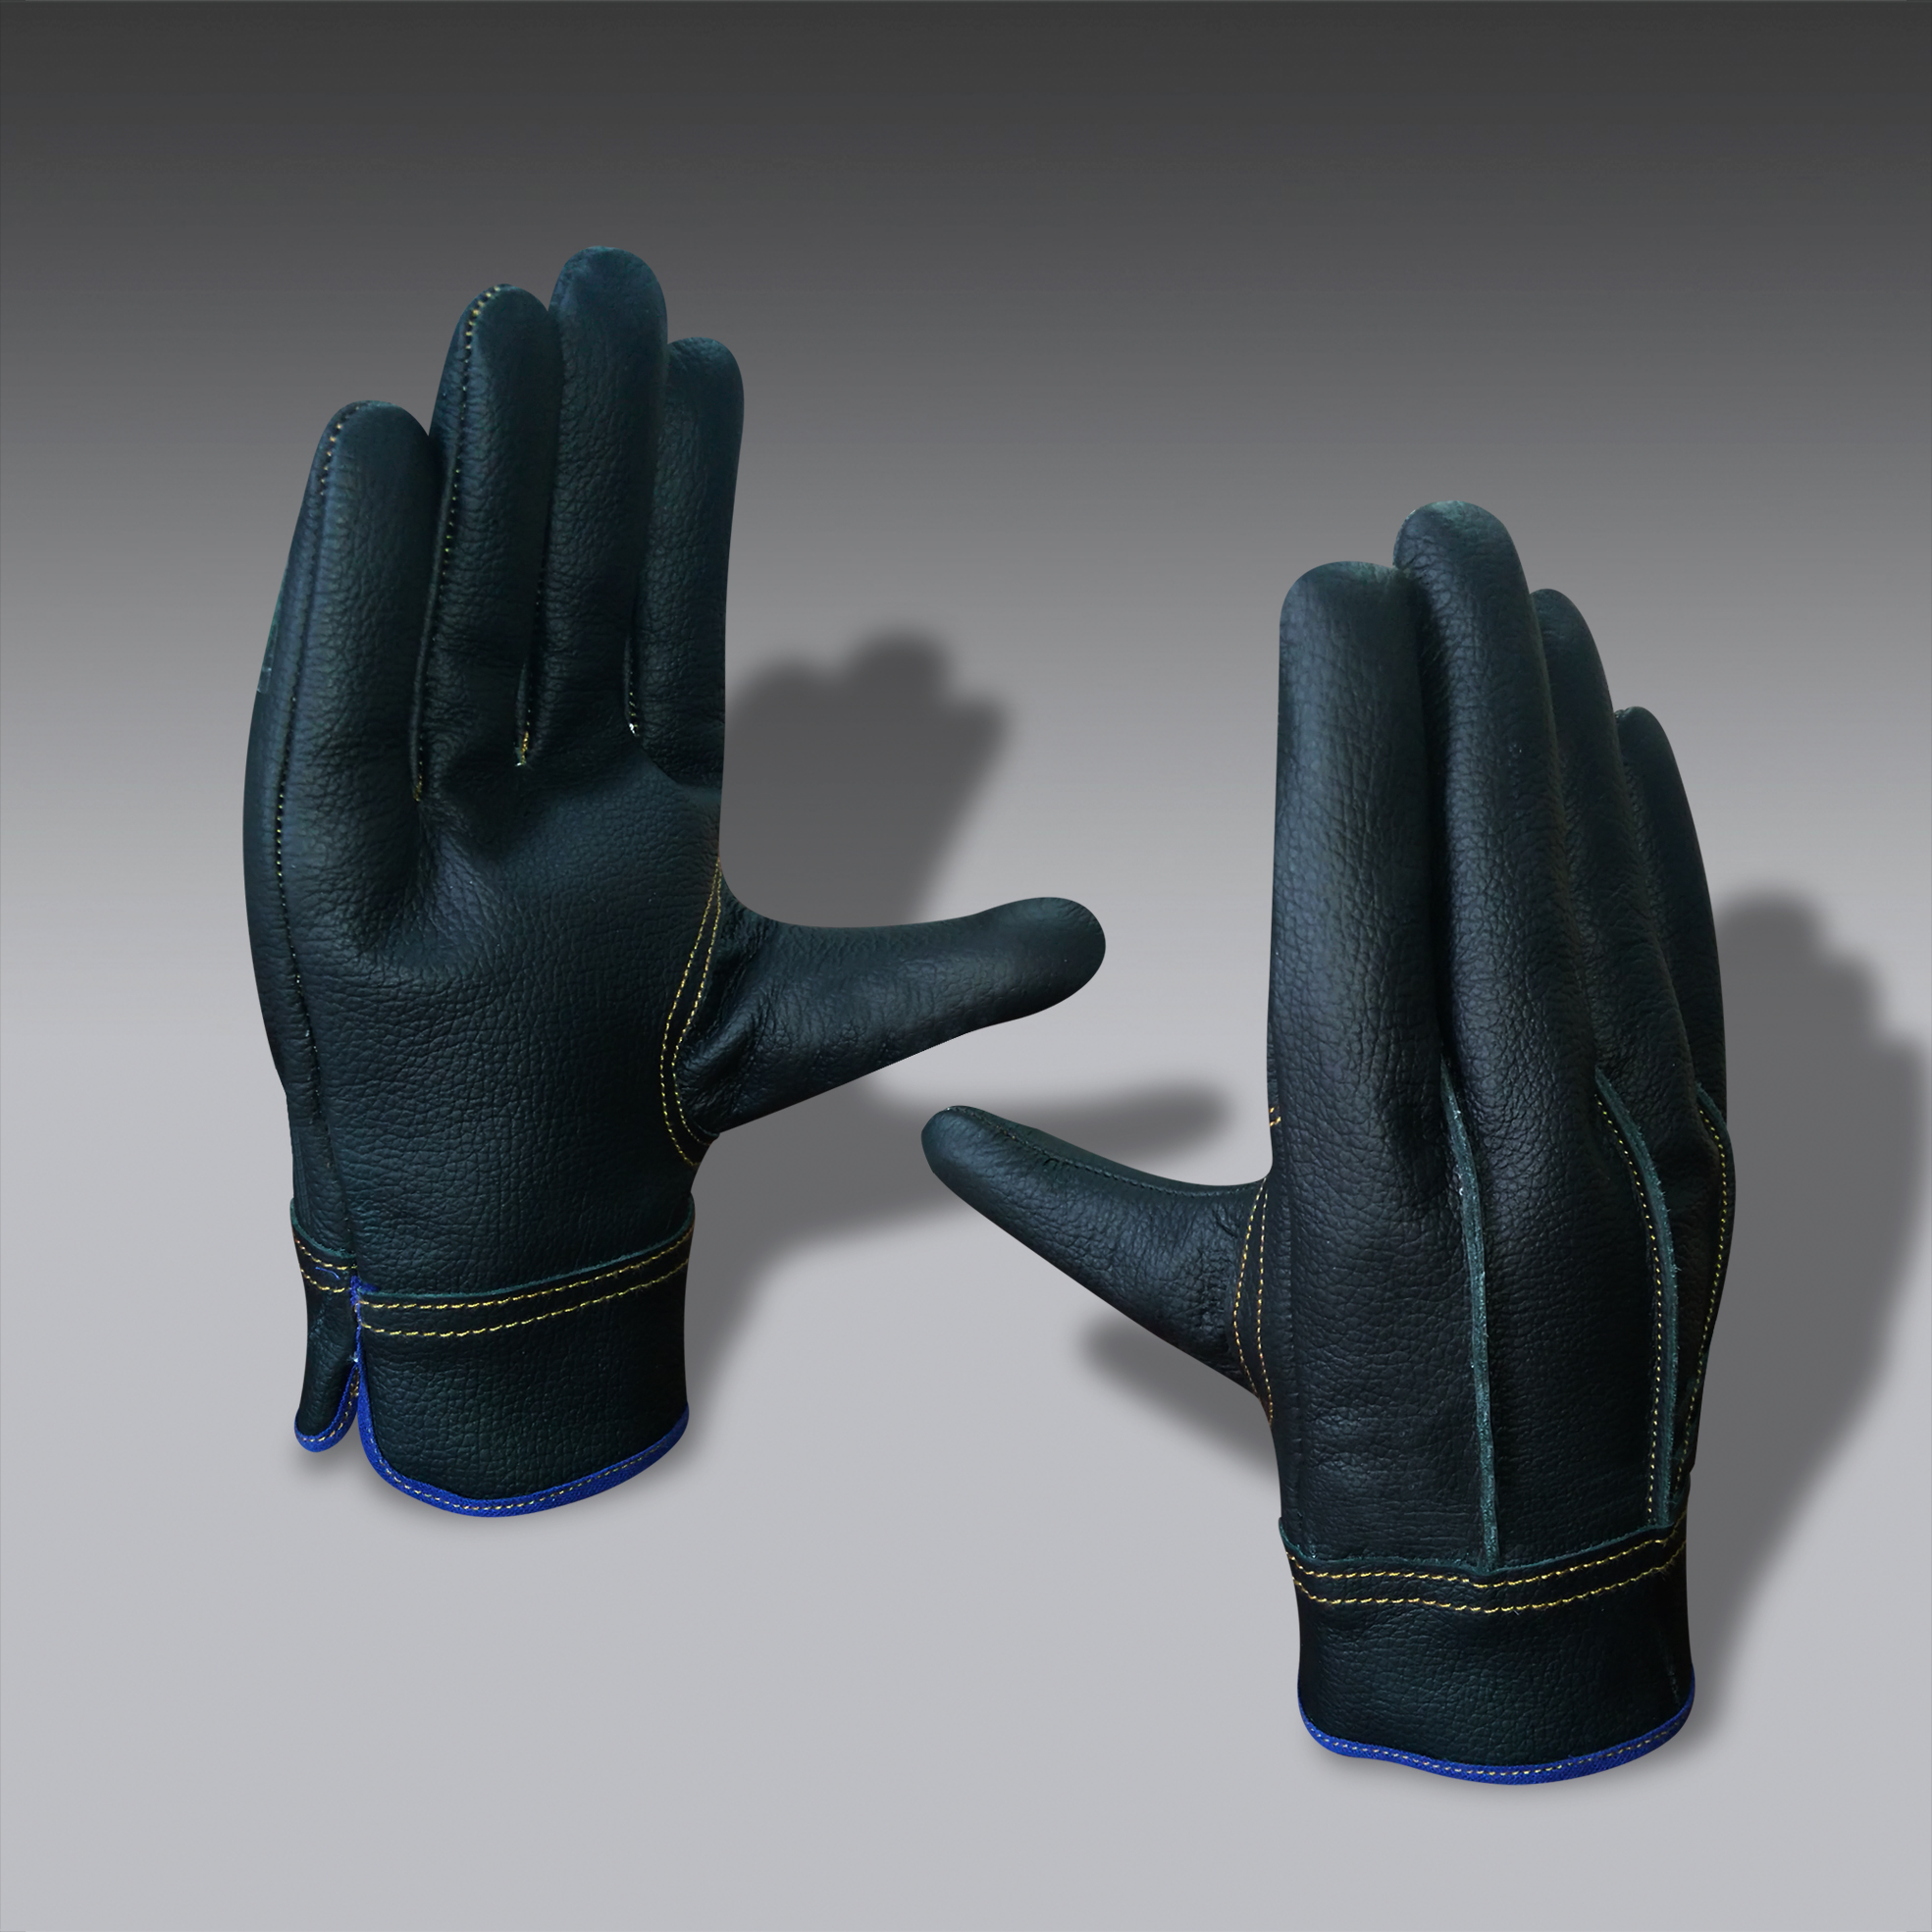 guantes para la seguridad industrial modelo ElecEco 01 guantes de seguridad industrial modelo ElecEco 01